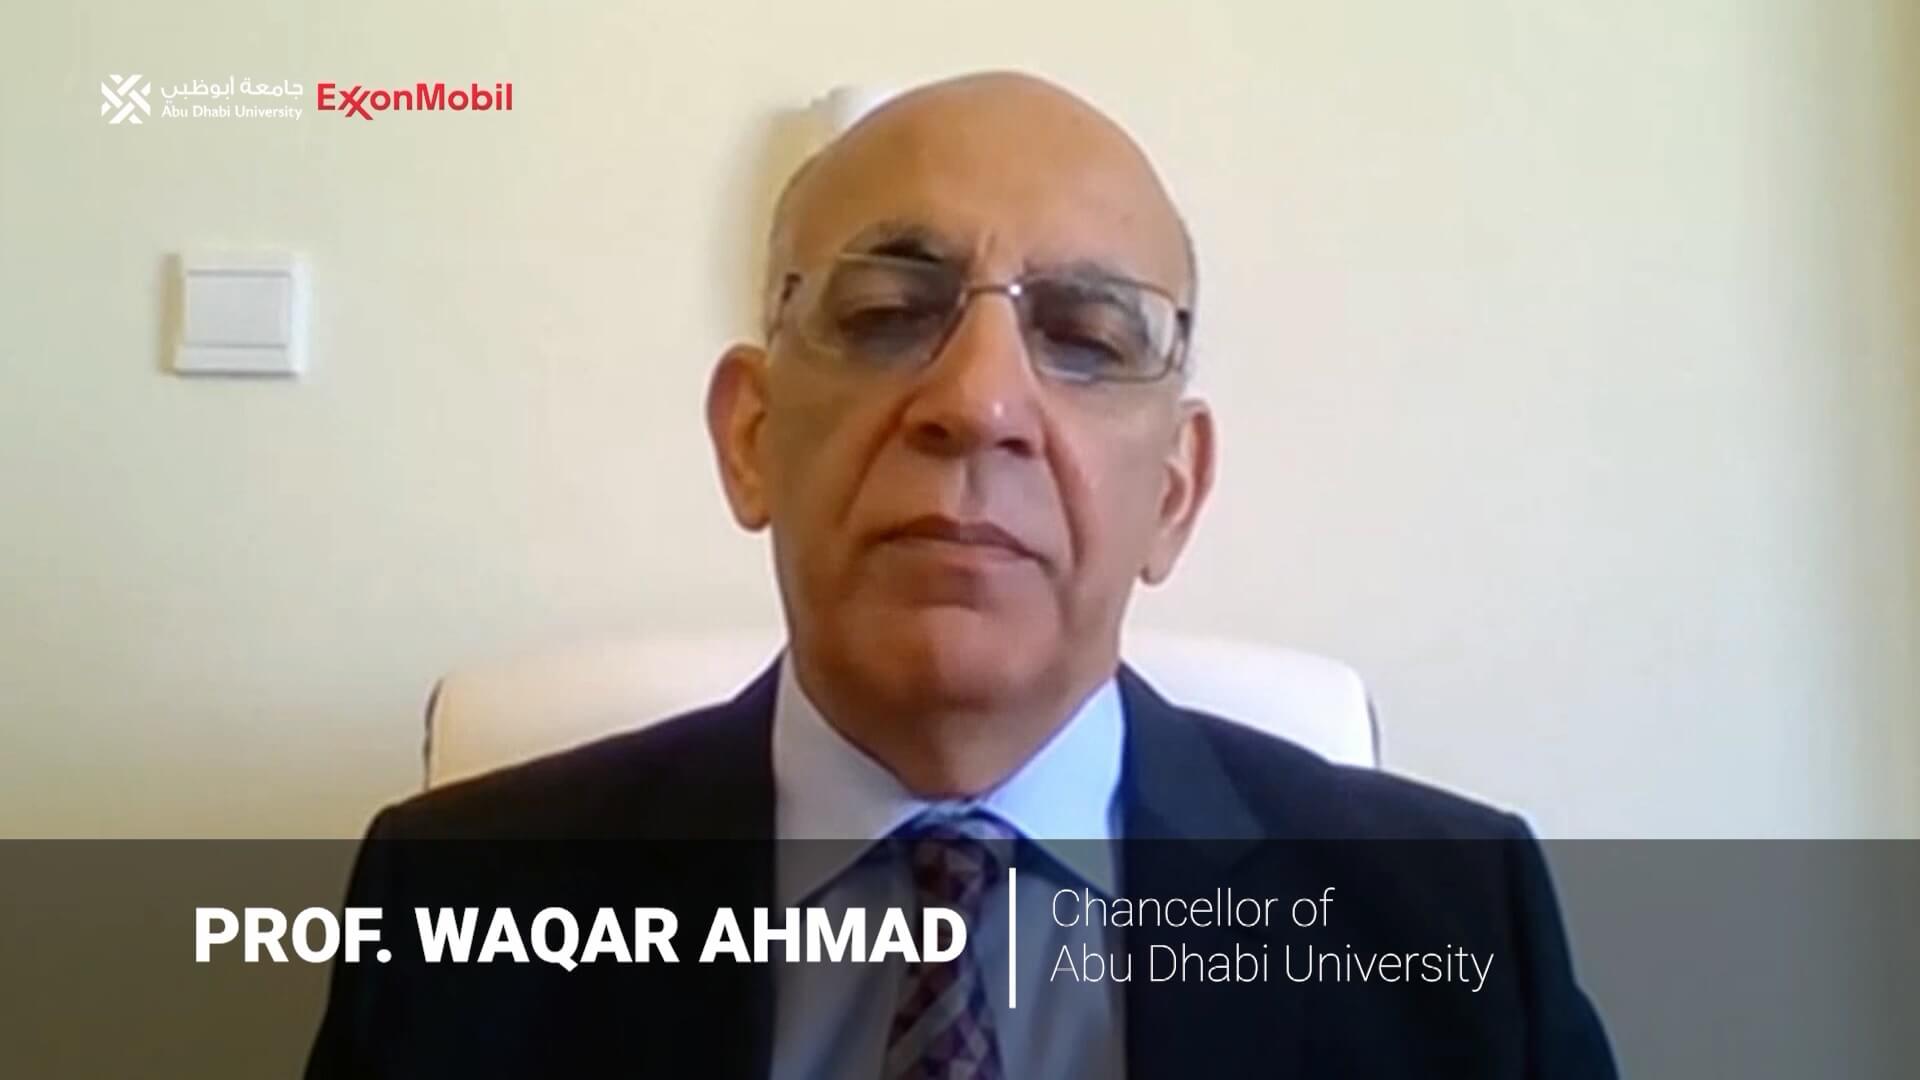 Professor Waqar Ahmad